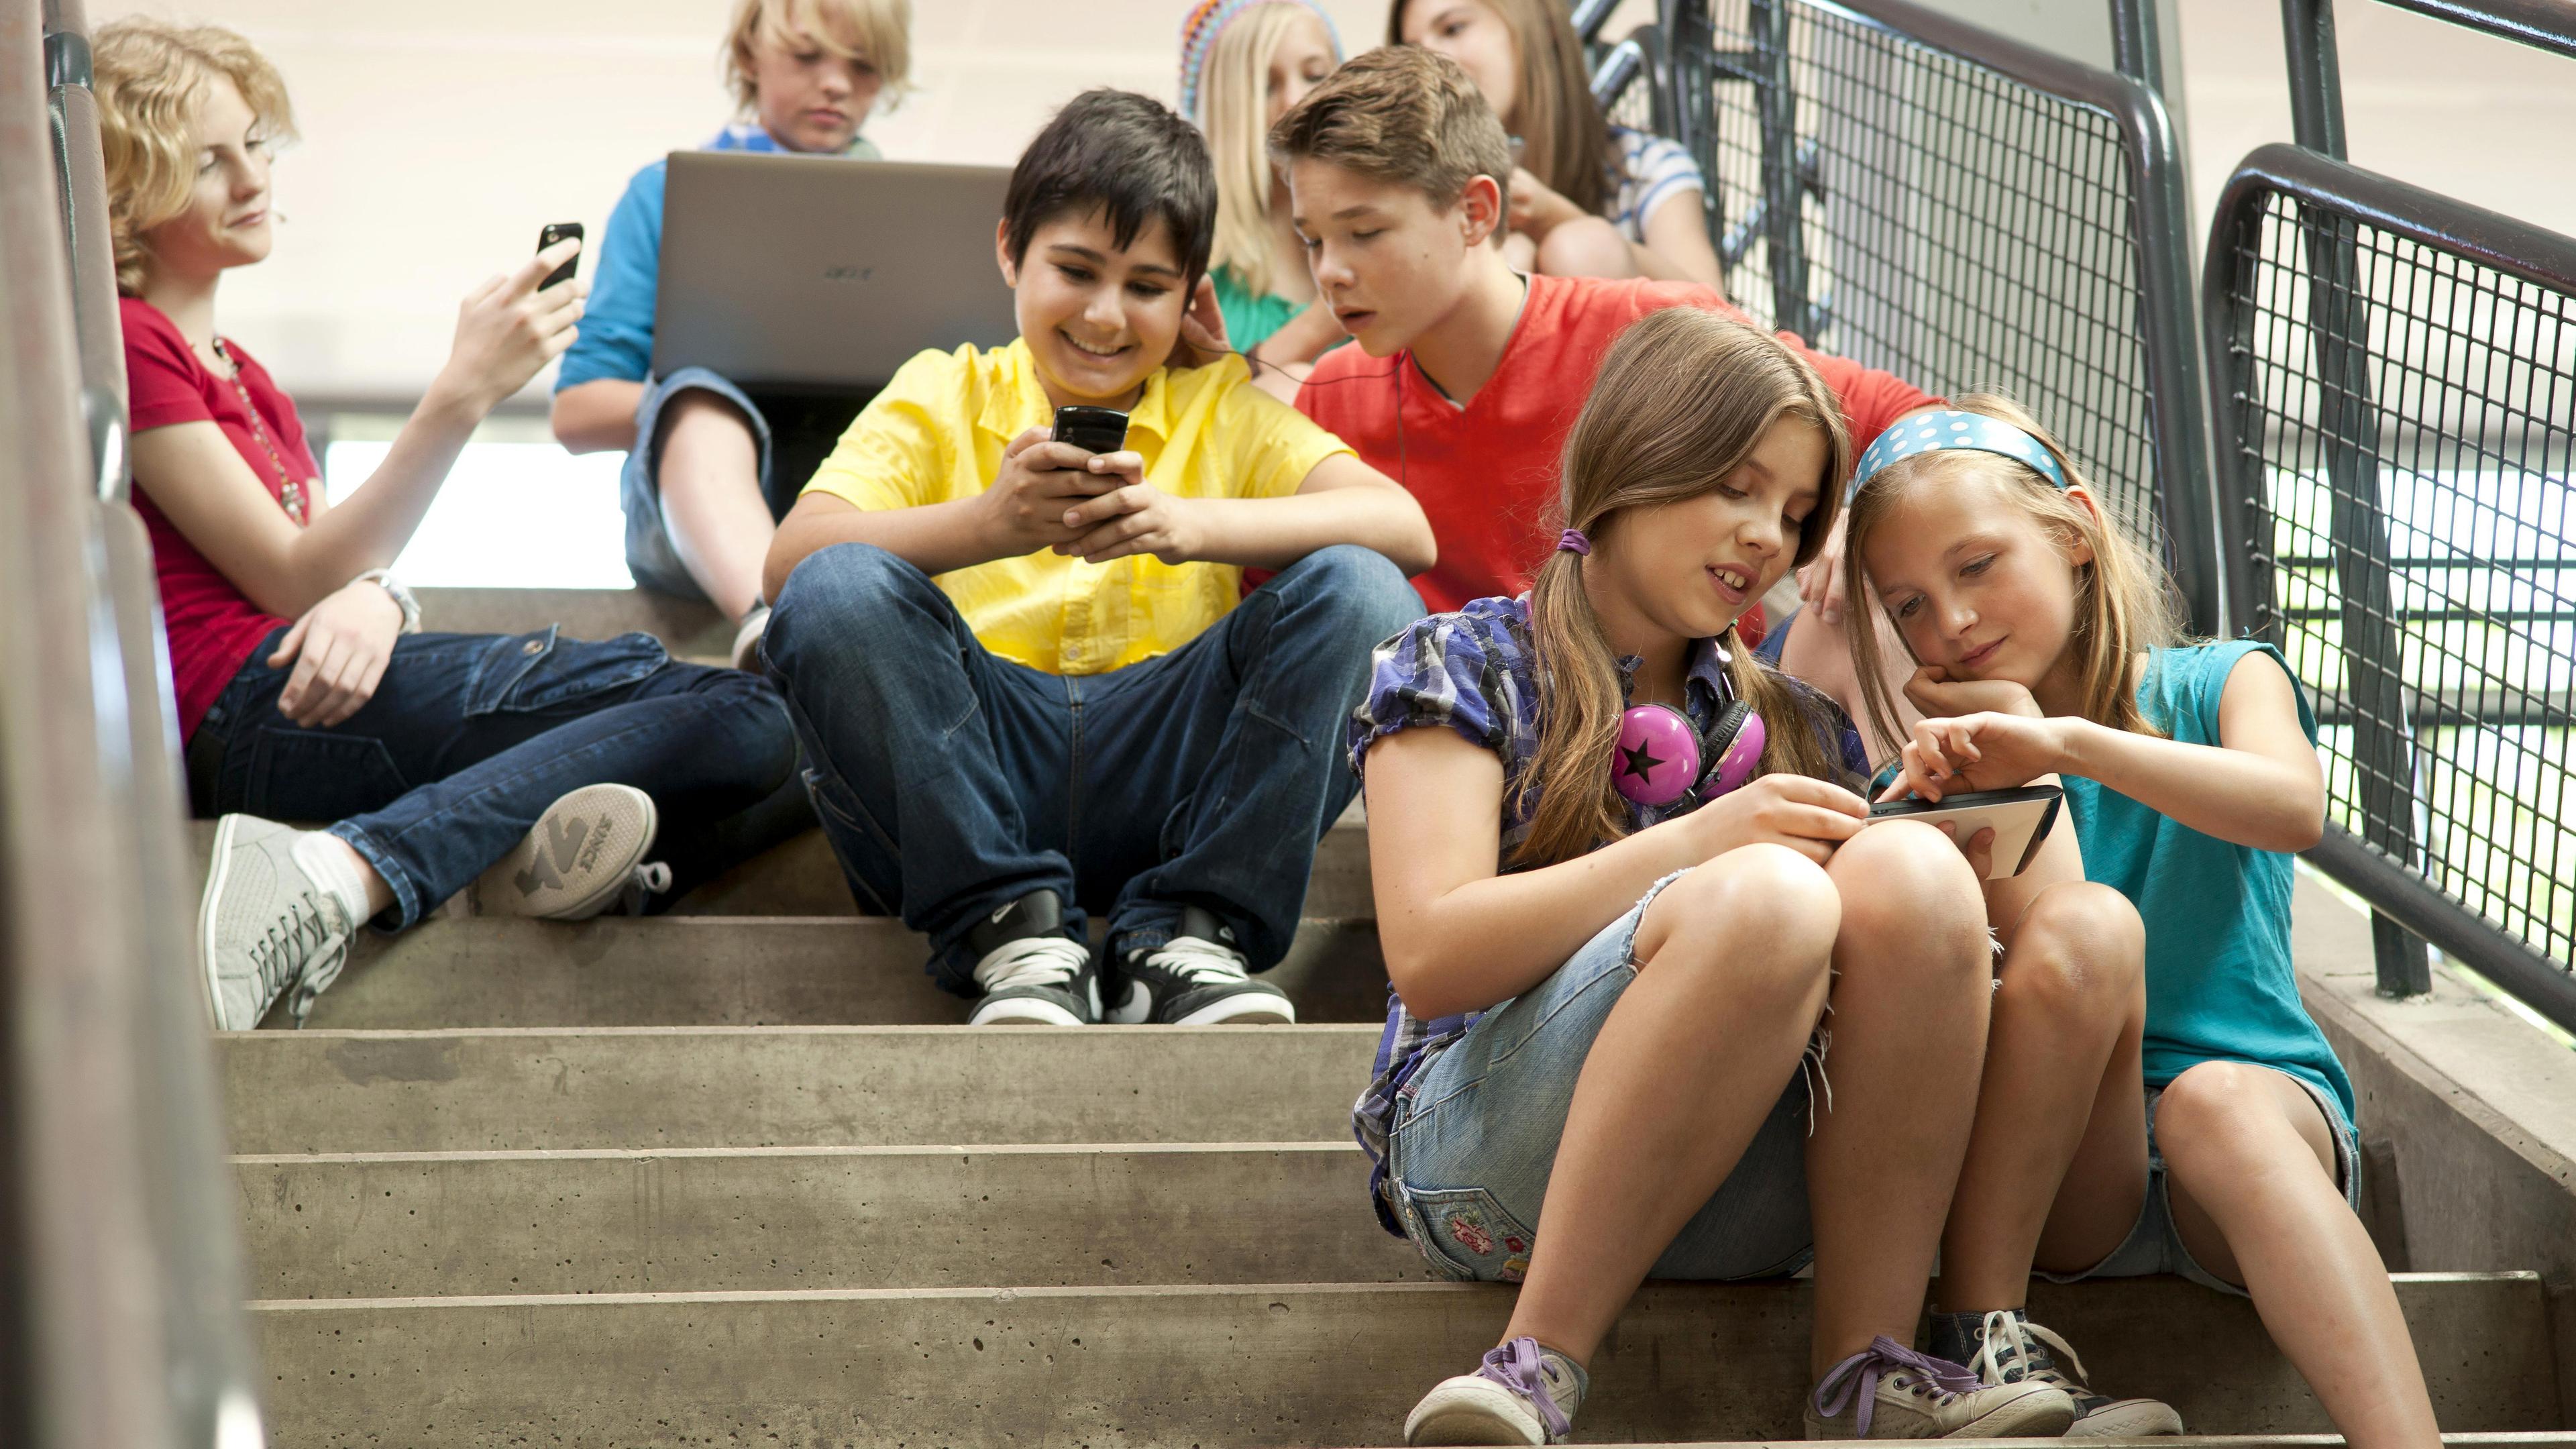 Archiv: Eine Gruppe Schüler sitzt auf einer Treppe und kommuniziert mit Tablet-PCs und Smartphones (undatierte Aufnahme)